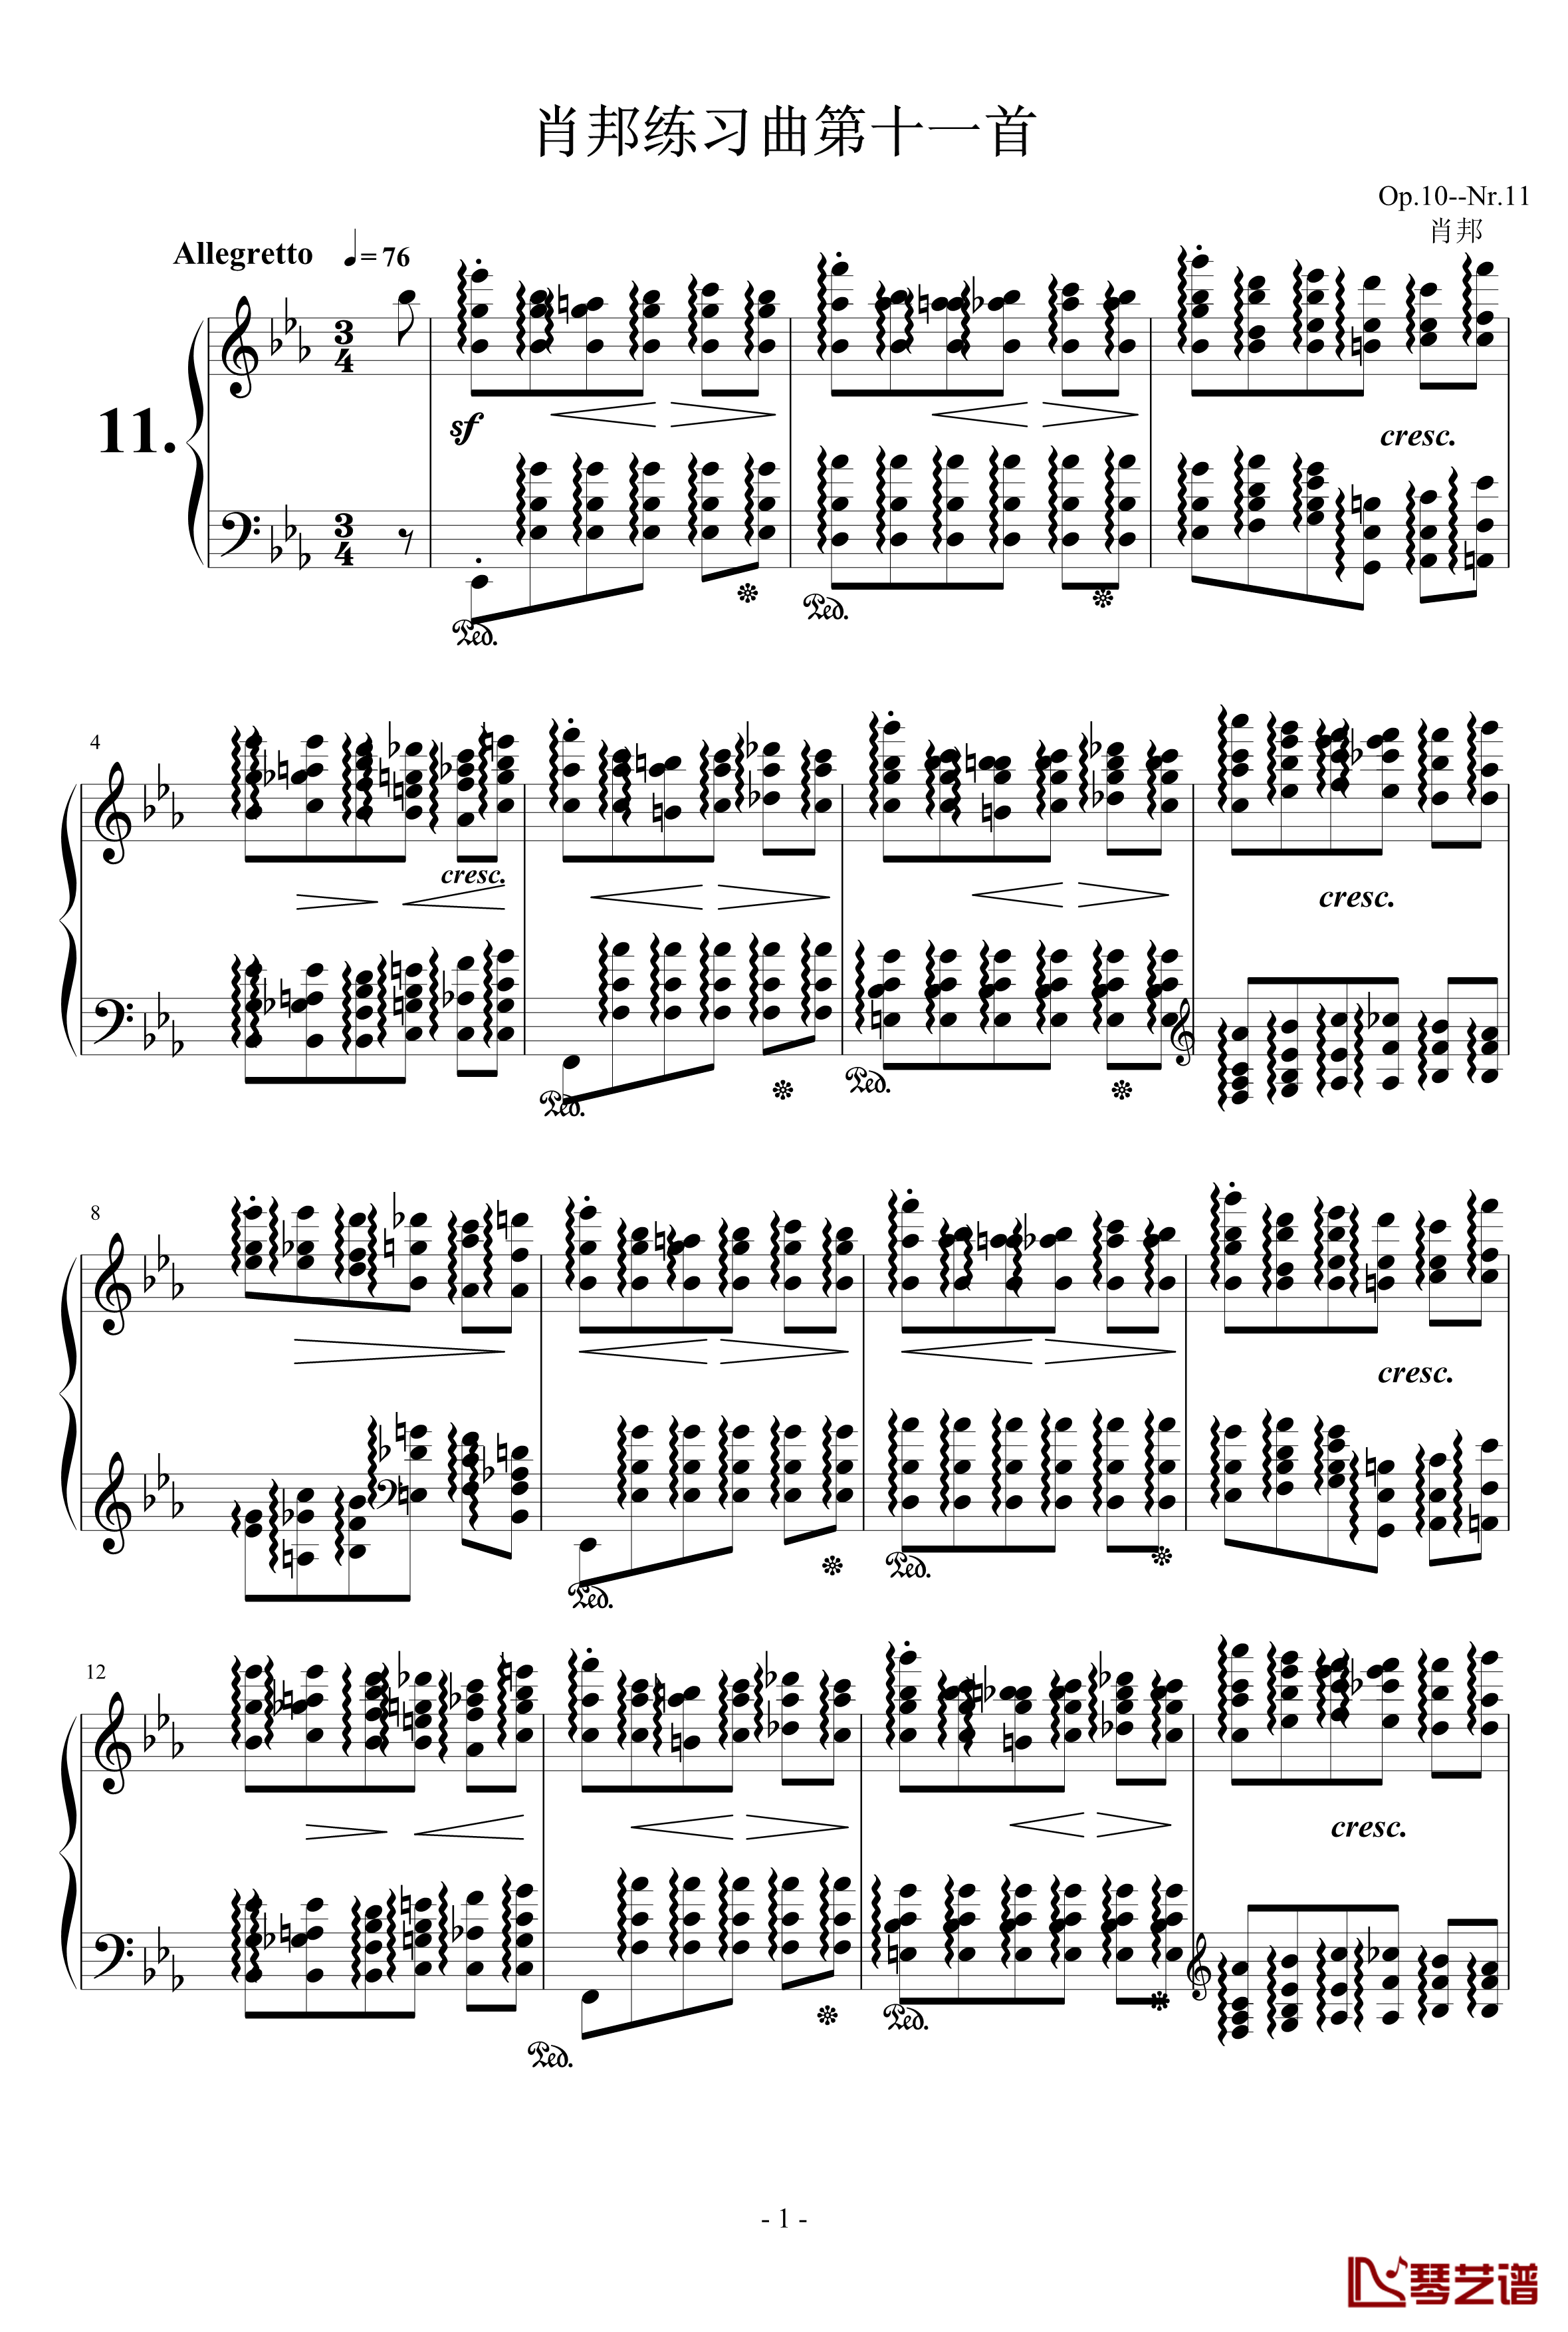 肖邦练习曲第11首钢琴谱-肖邦-chopin